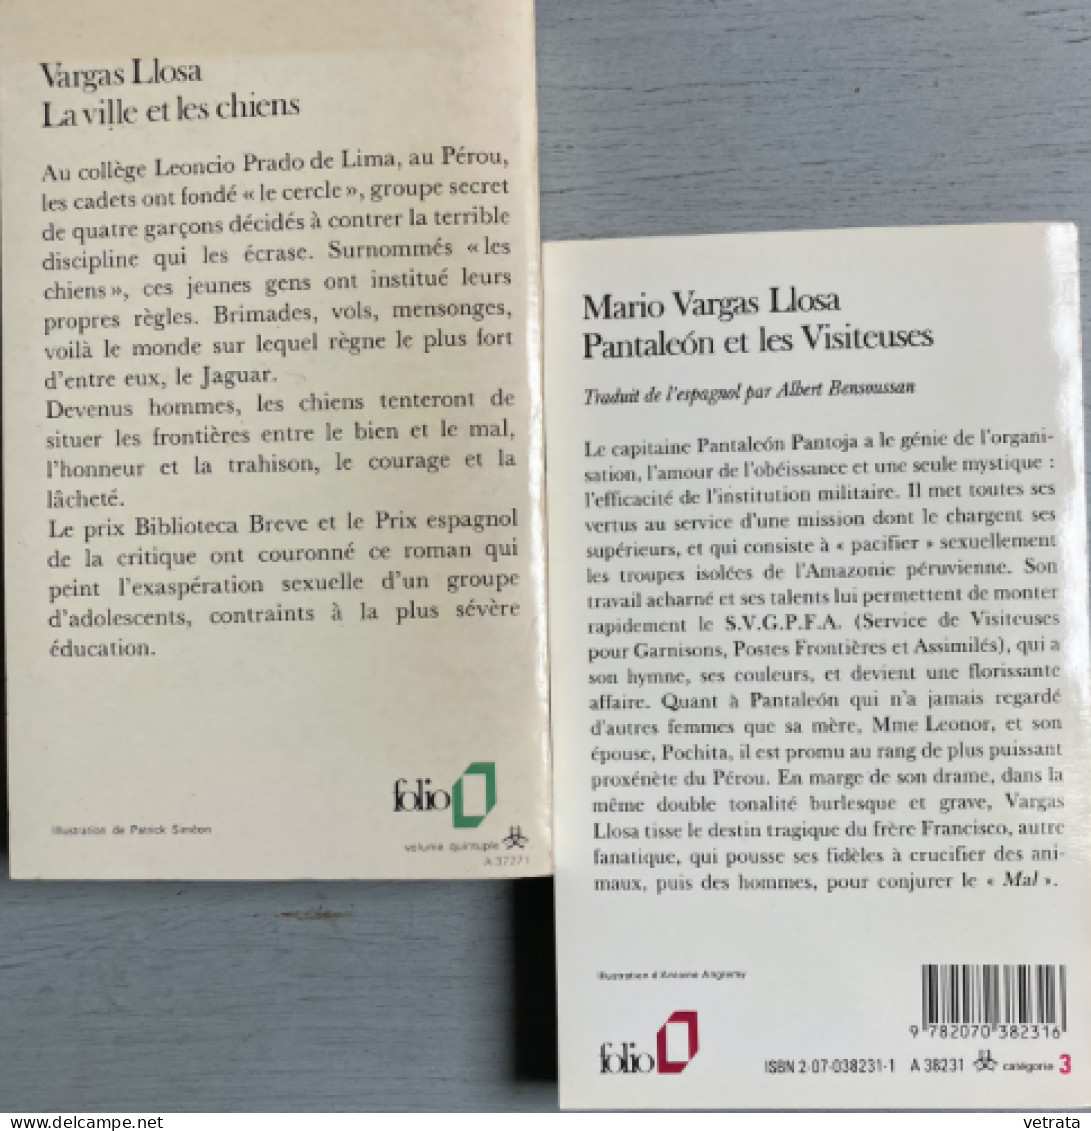 MARIO VARGAS LLOSA : 4 Livres =  Histoire De Mayta / Qui A Tué Palomino Moléro ? (Gallimard-1986/87-Très Bon état) / La - Lots De Plusieurs Livres